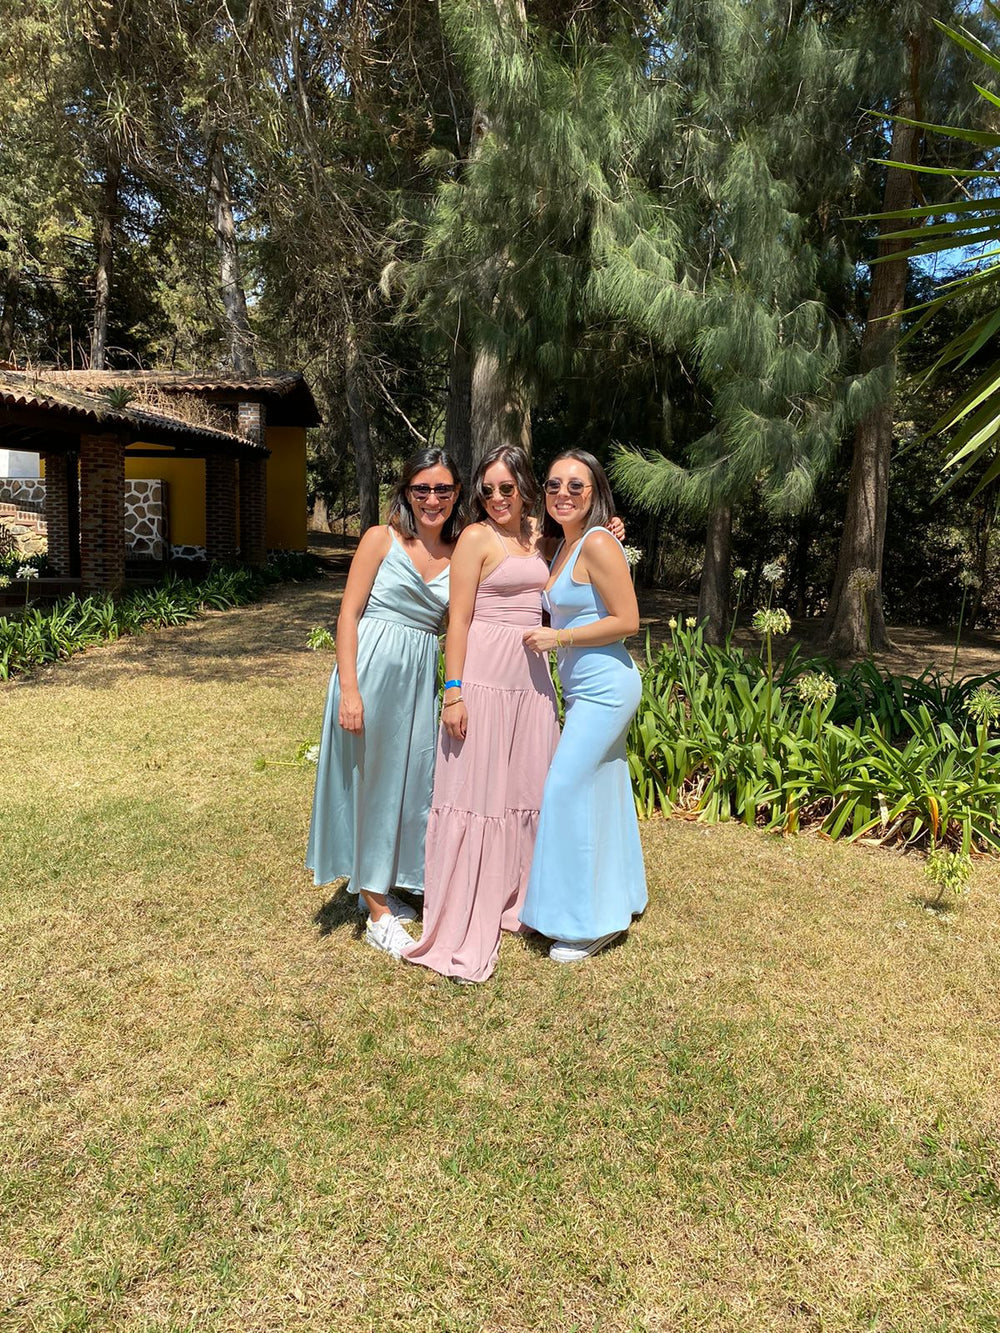 Macie - vestido largo azul - Lend the Trend renta de vestidos mexico